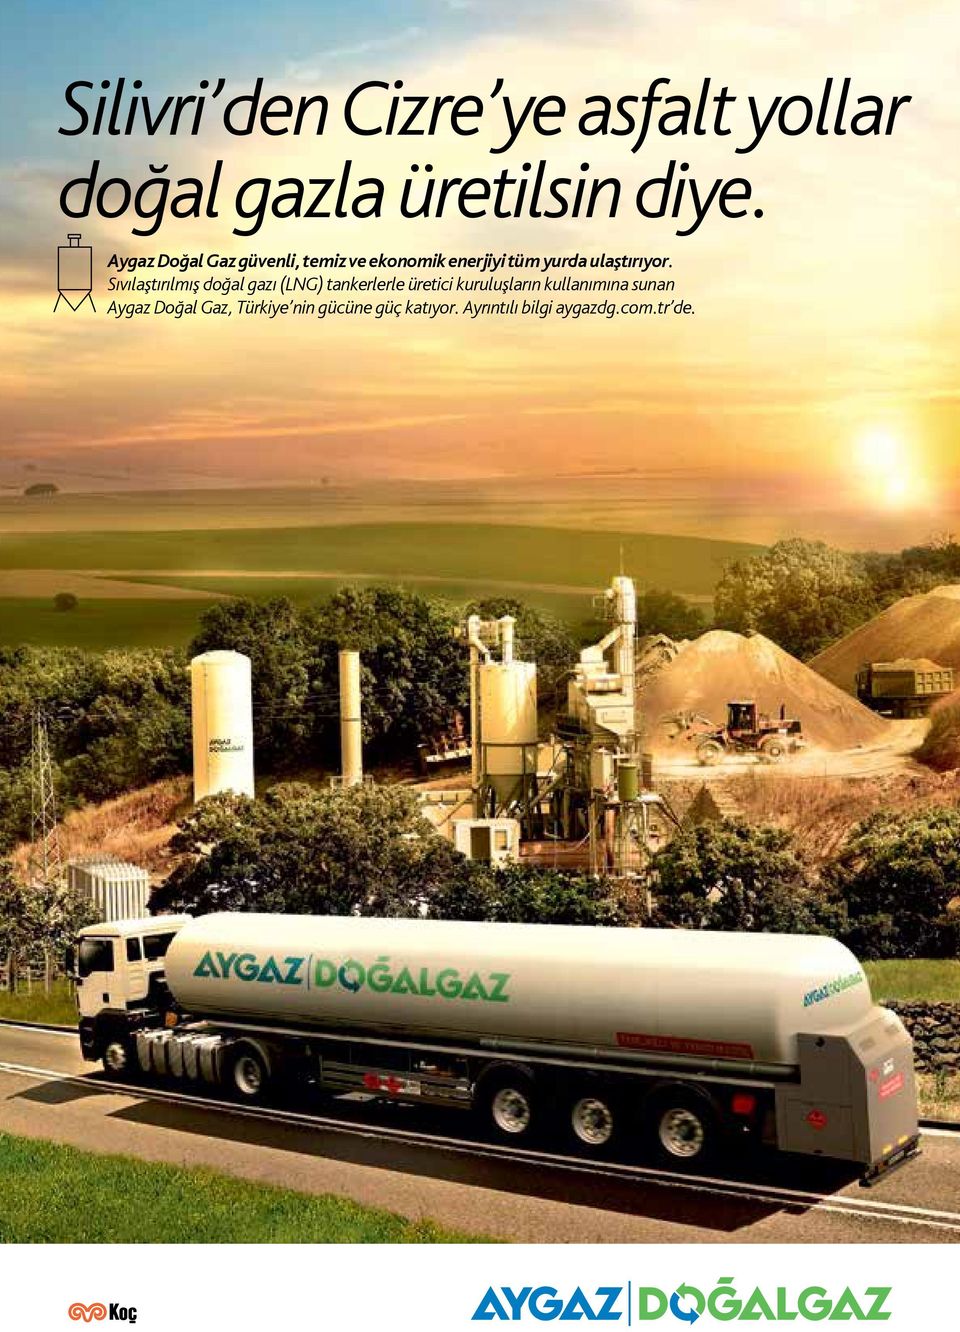 Sıvılaştırılmış doğal gazı (LNG) tankerlerle üretici kuruluşların